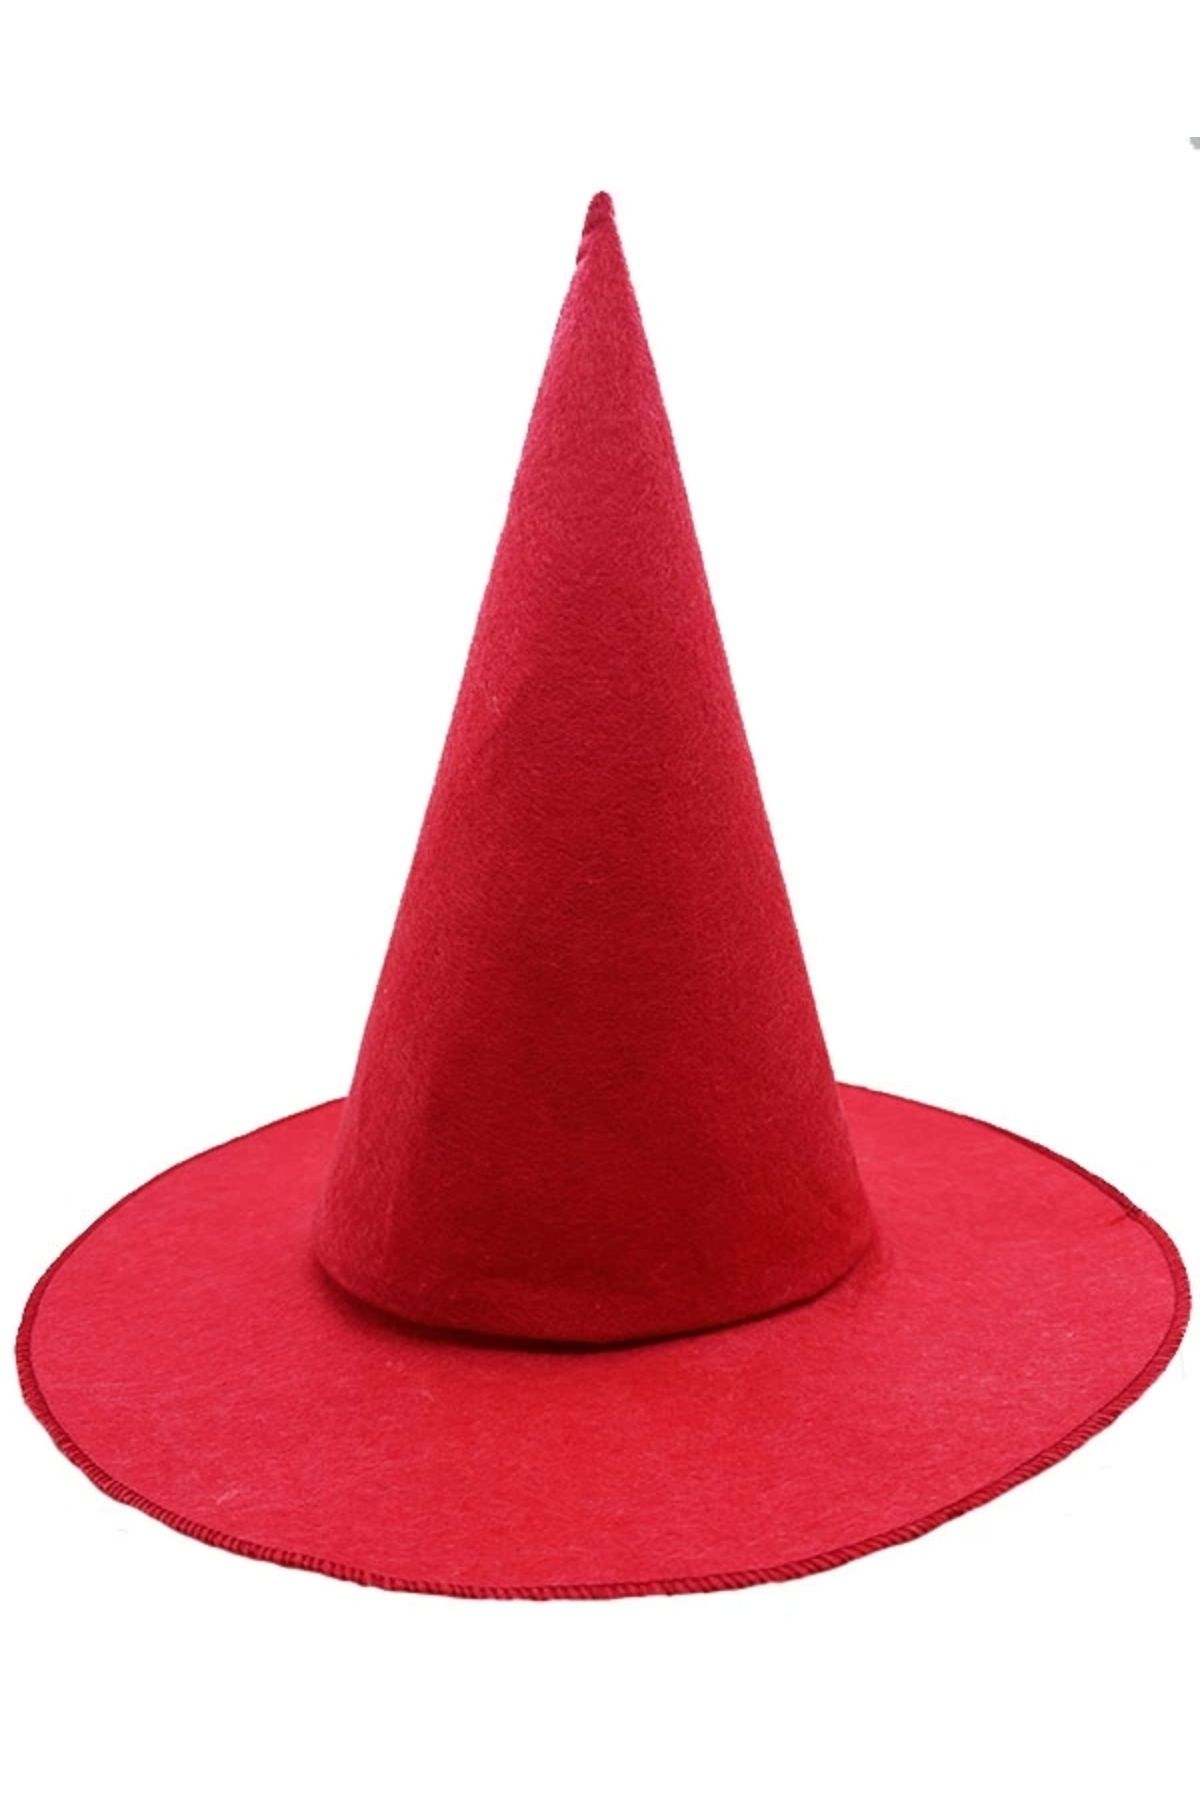 Genel Markalar Kırmızı Renk Keçe Cadı Şapkası Yetişkin Çocuk Uyumlu 35x38 Cm